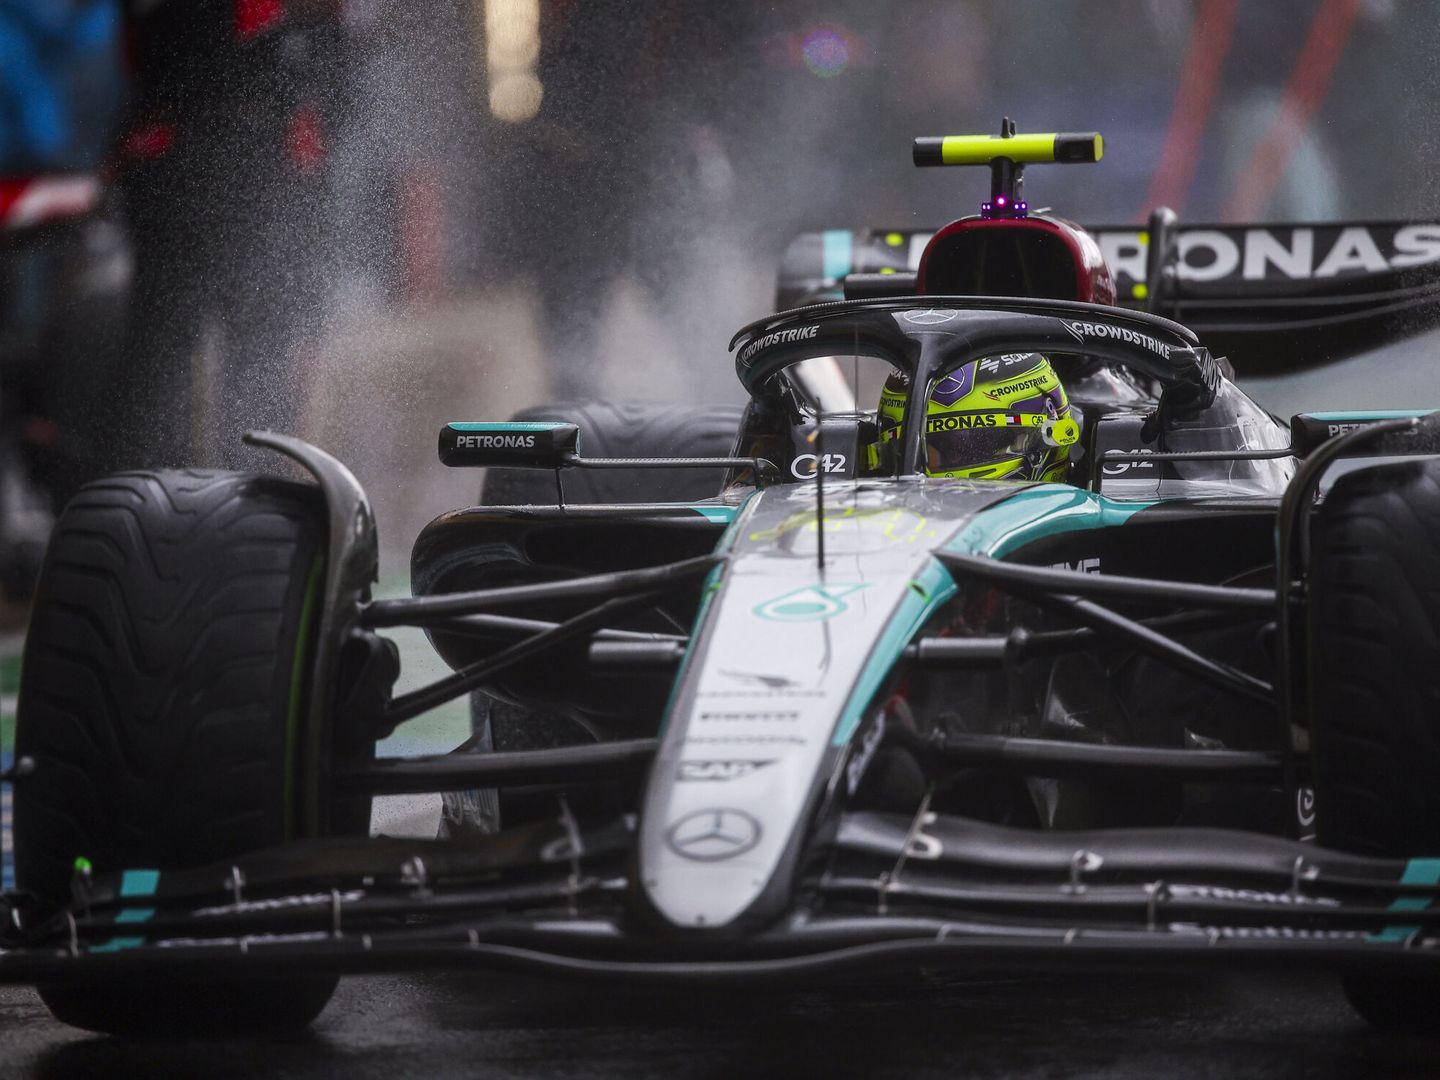 Mercedes ha ganado dos de las últimas carreras, pero Hungaroring será un test para el nuevo alerón. (Europa Press)